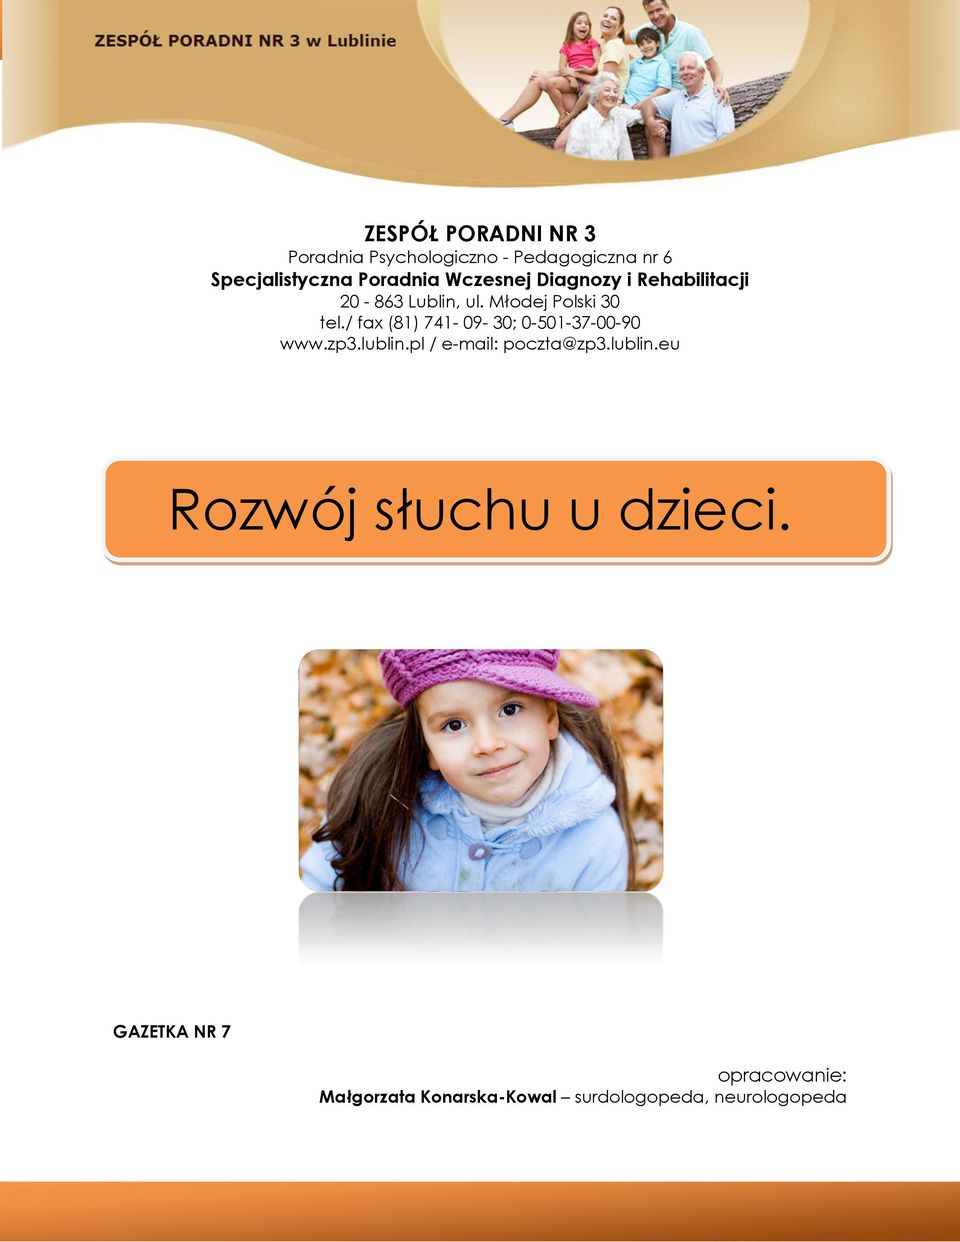 / fax (81) 741-09- 30; 0-501-37-00-90 www.zp3.lublin.pl / e-mail: poczta@zp3.lublin.eu Rozwój słuchu u dzieci.